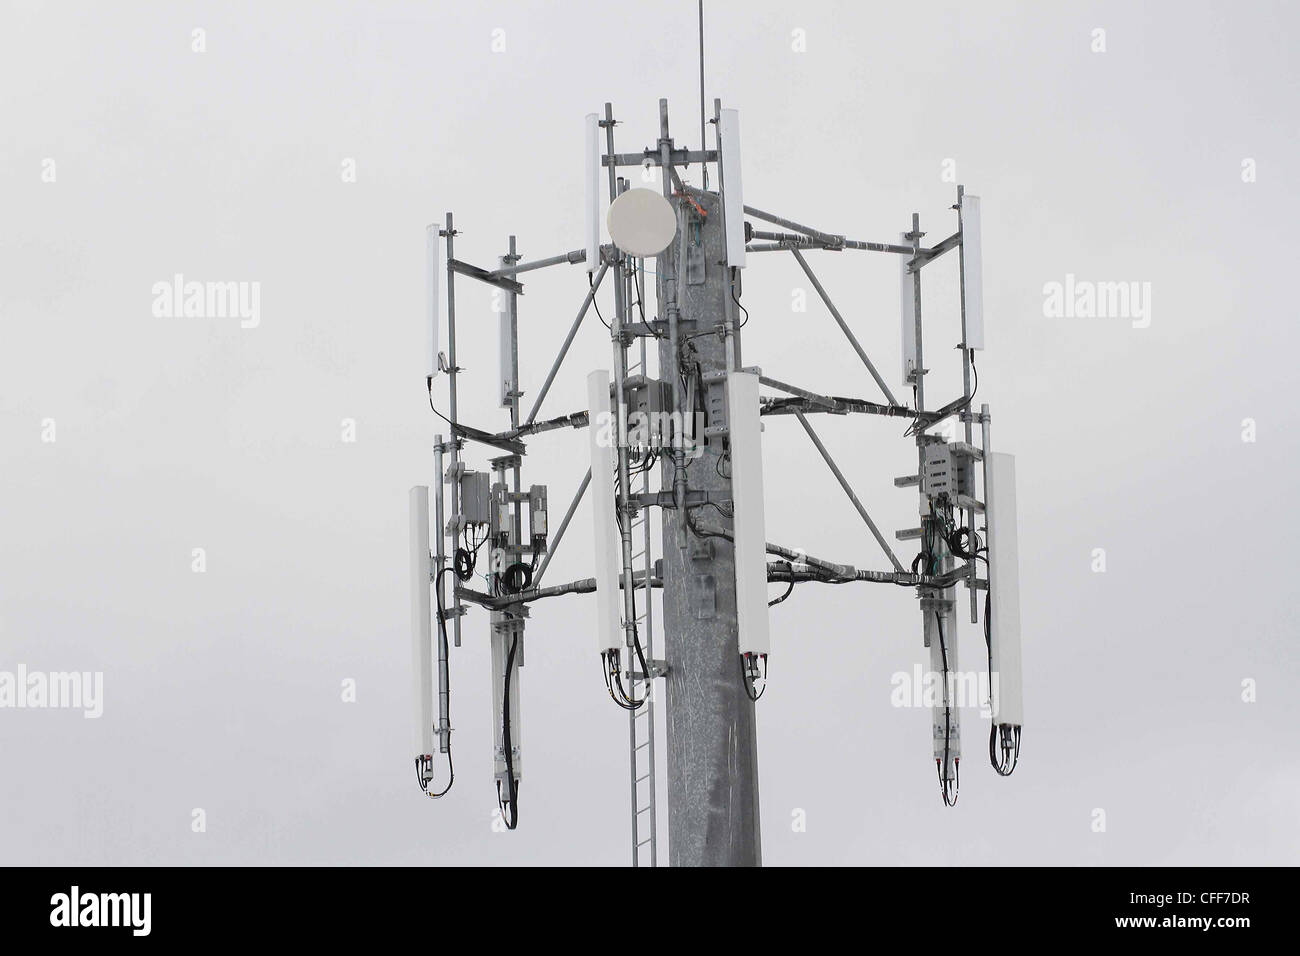 Wireless telecommunications tower Stock Photo